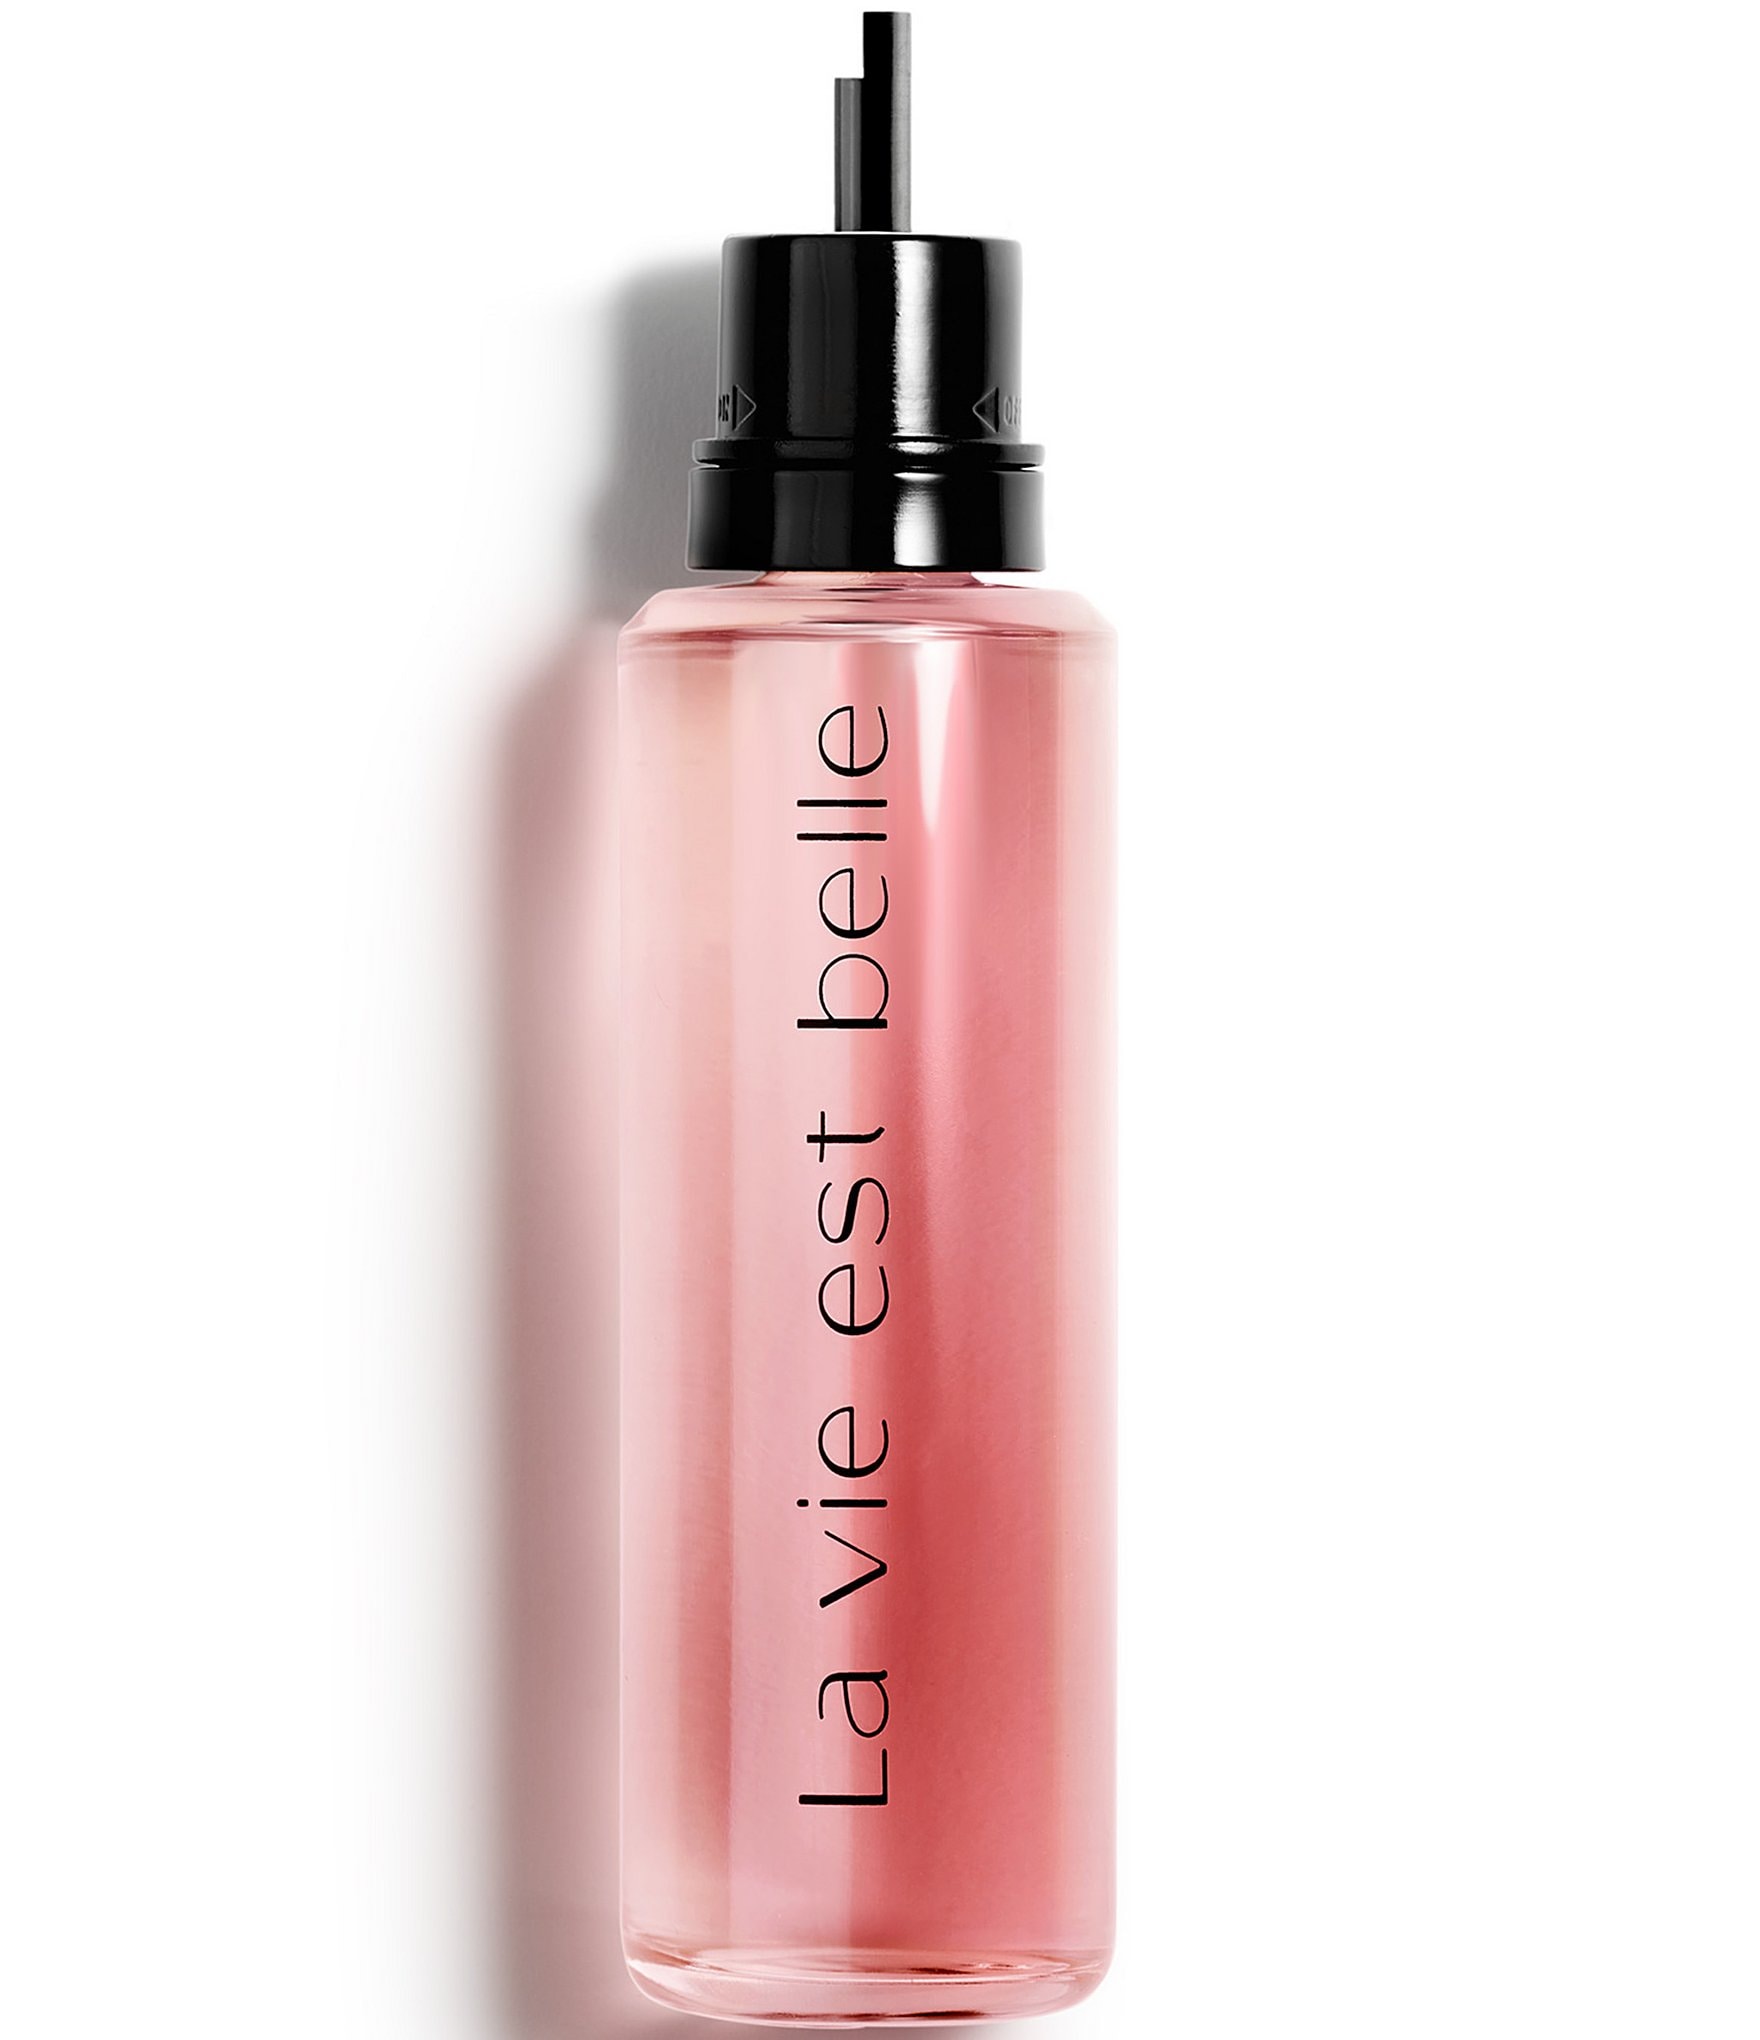  Lancôme La Vie Est Belle Eau de Parfum, 3.4oz - Long Lasting  Women's Perfume with Iris, Patchouli, Vanilla & Sugar Notes : Beauty &  Personal Care